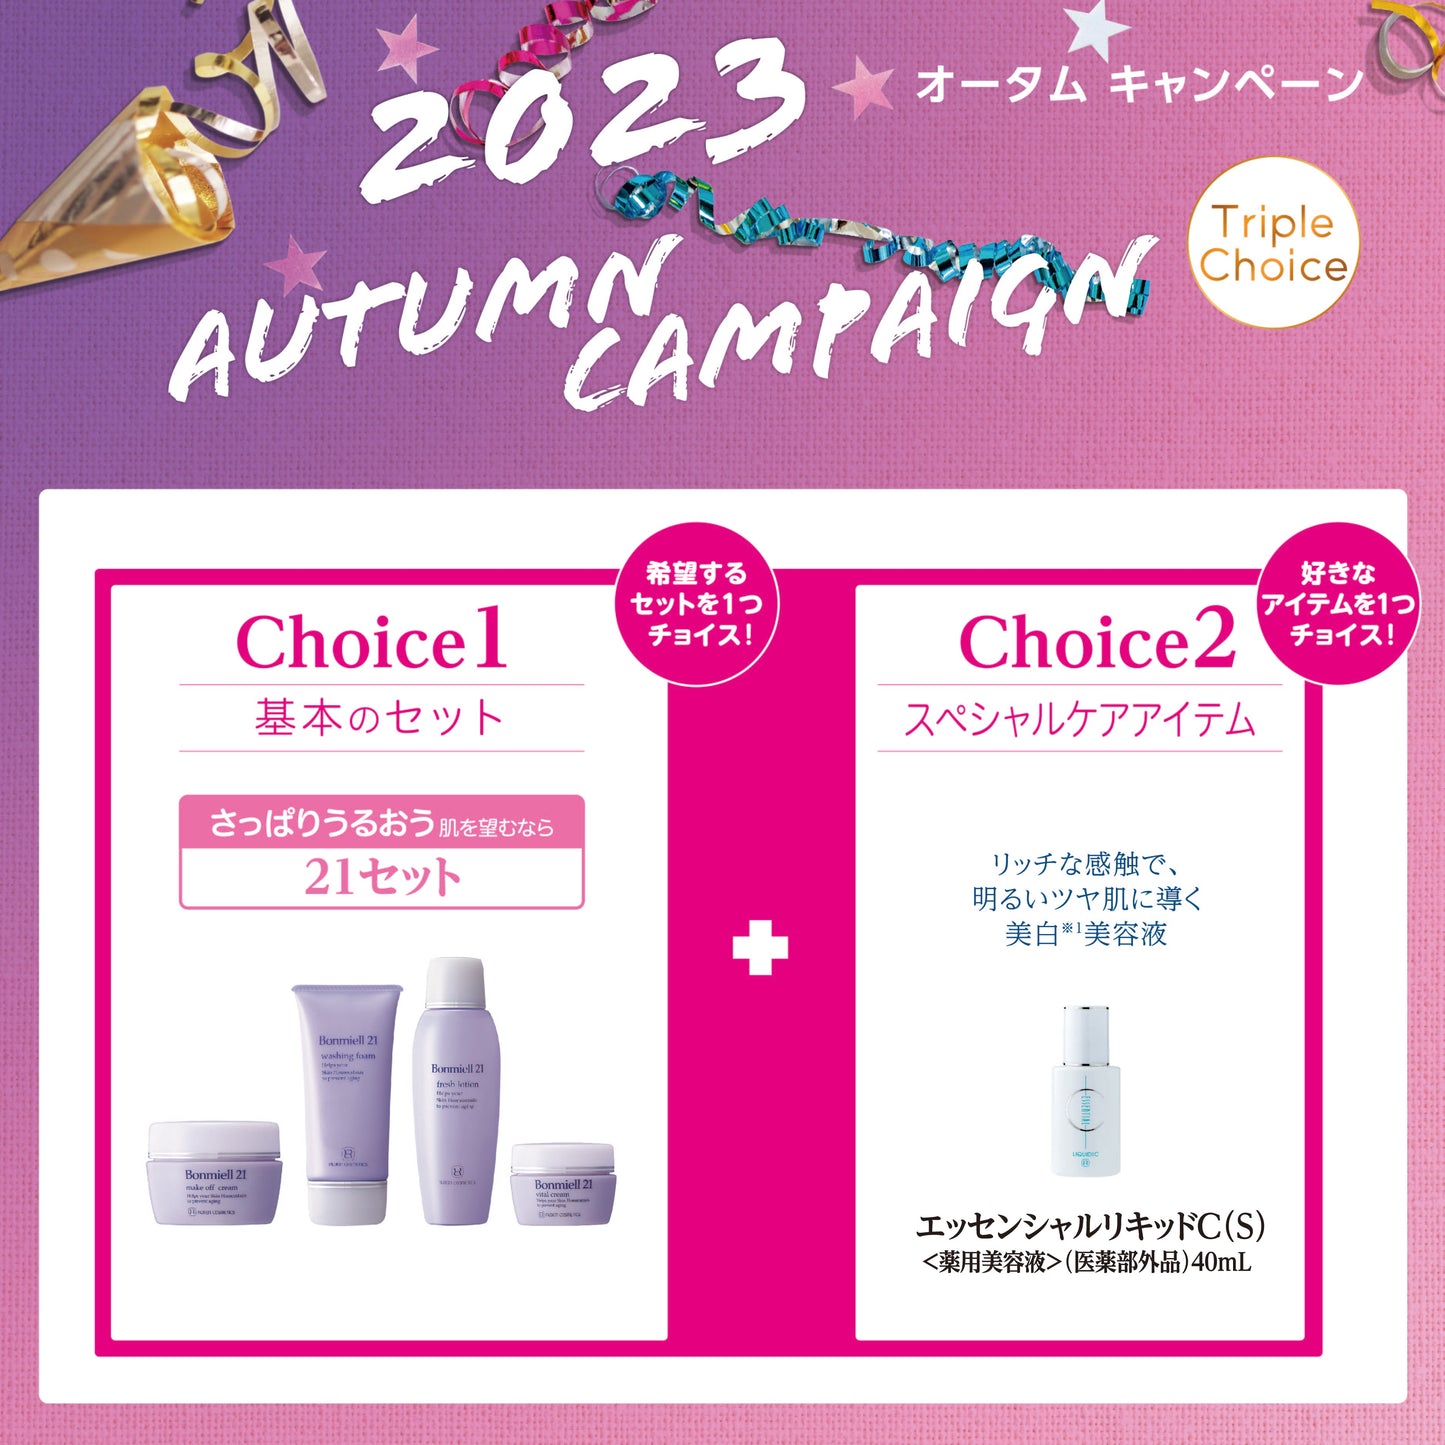 【New】2023 Autumn Campaign 21 Set